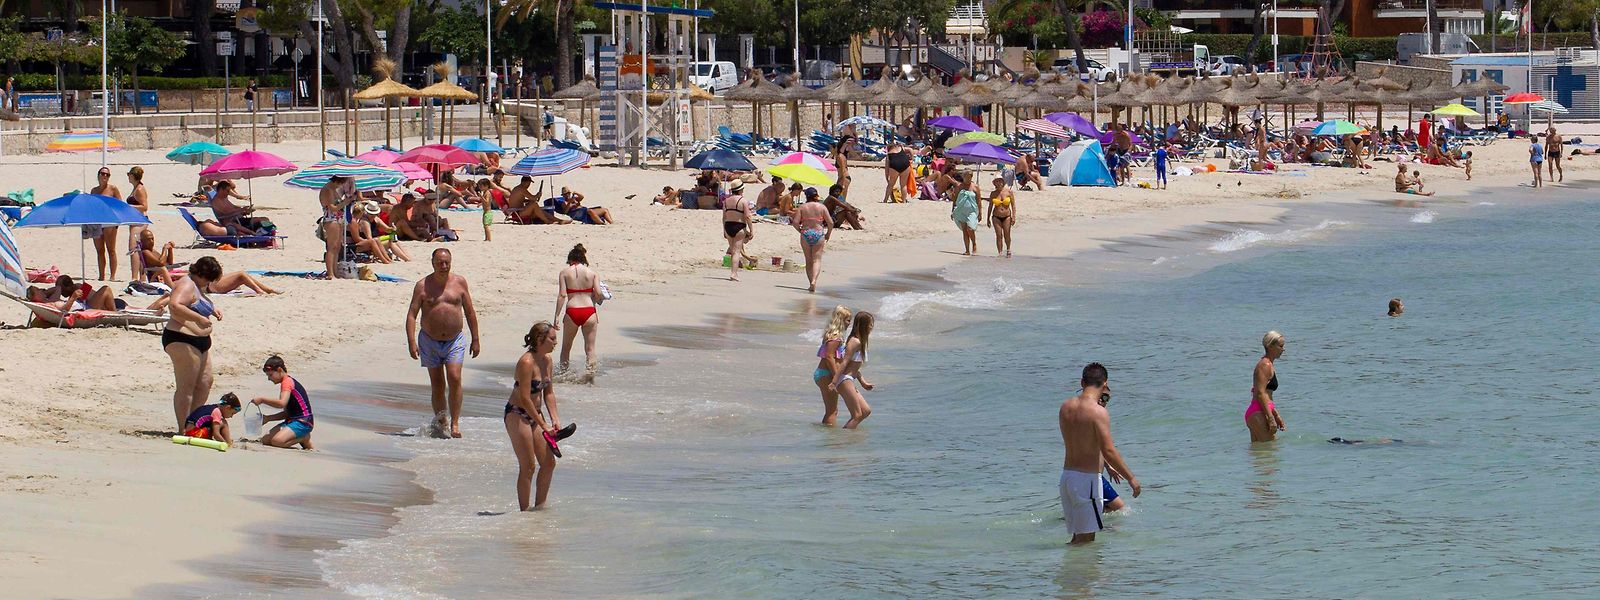 Spanien und Mallorca zählen auch dieses Jahr zu den beliebtesten Urlaubszielen in Europa.